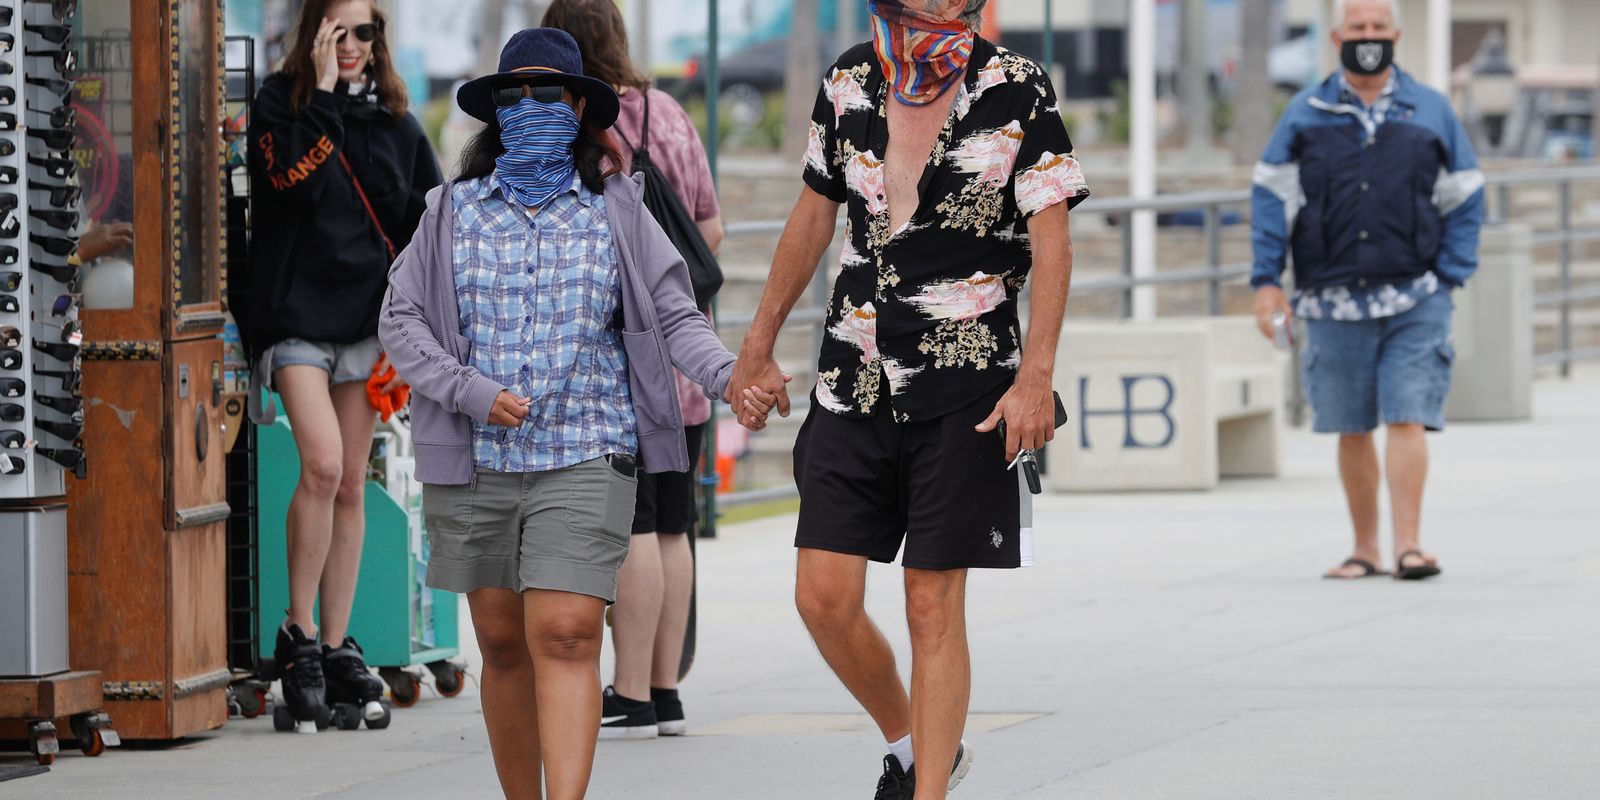 EUA recomendam que população use "máscara mais protetora possível"